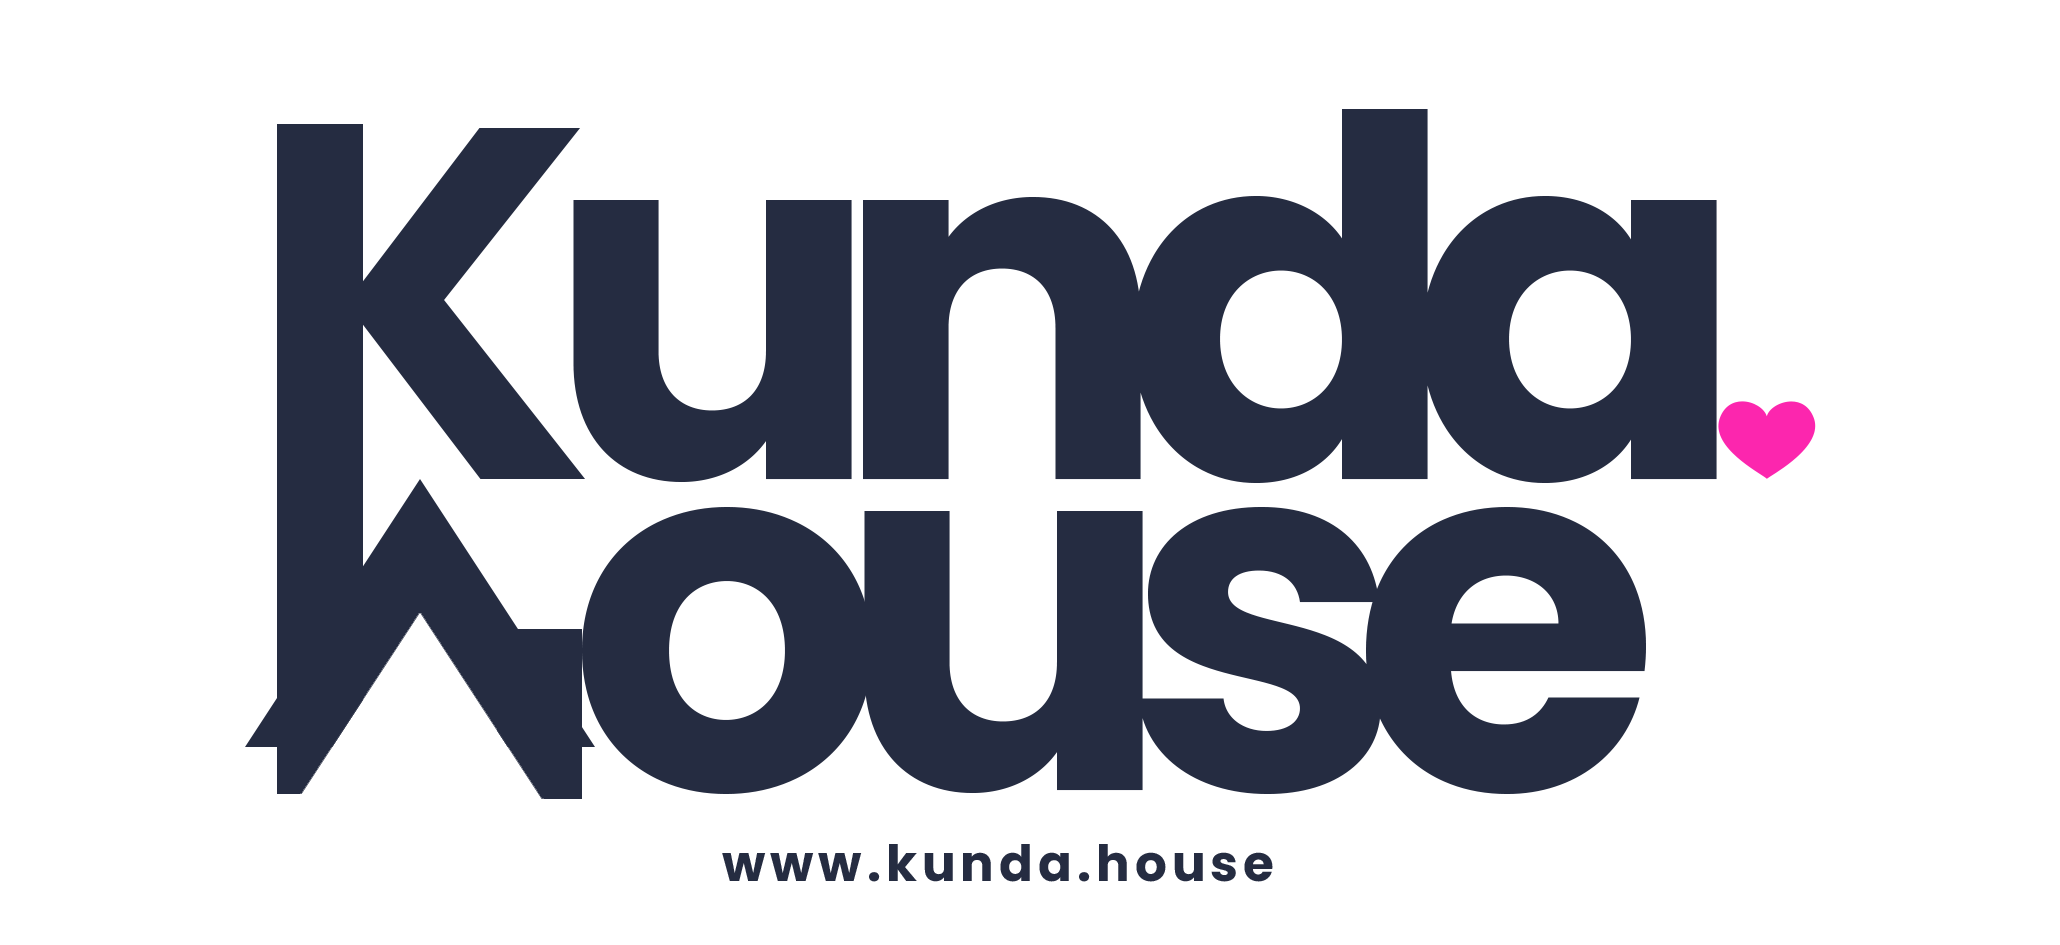 Kunda House